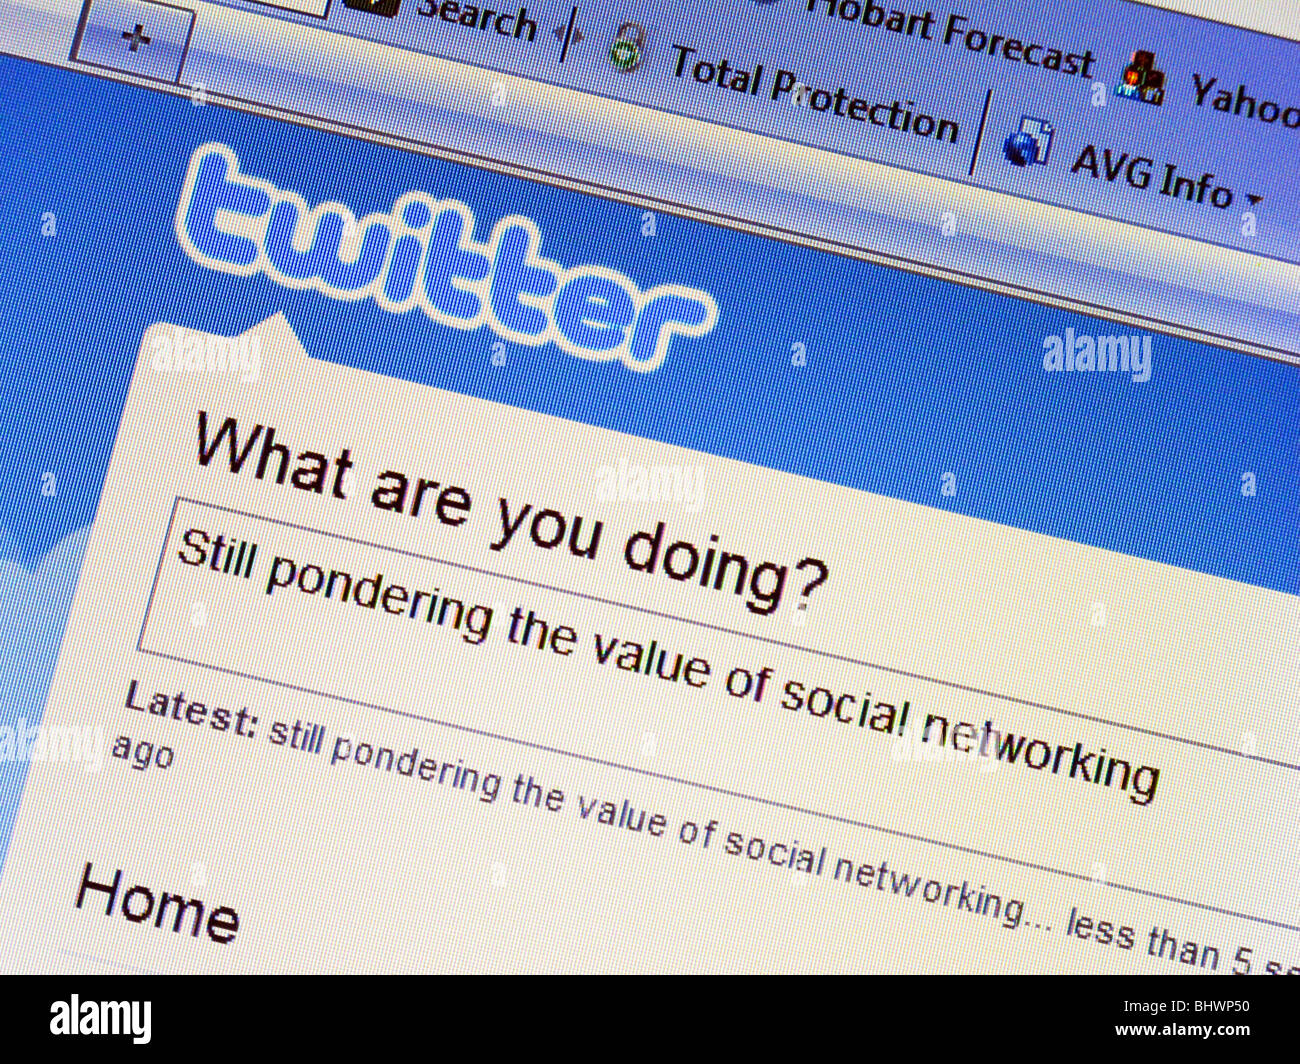 Twitter pantalla mostrando el mensaje 'Still reflexionando sobre el valor de las redes sociales' Foto de stock